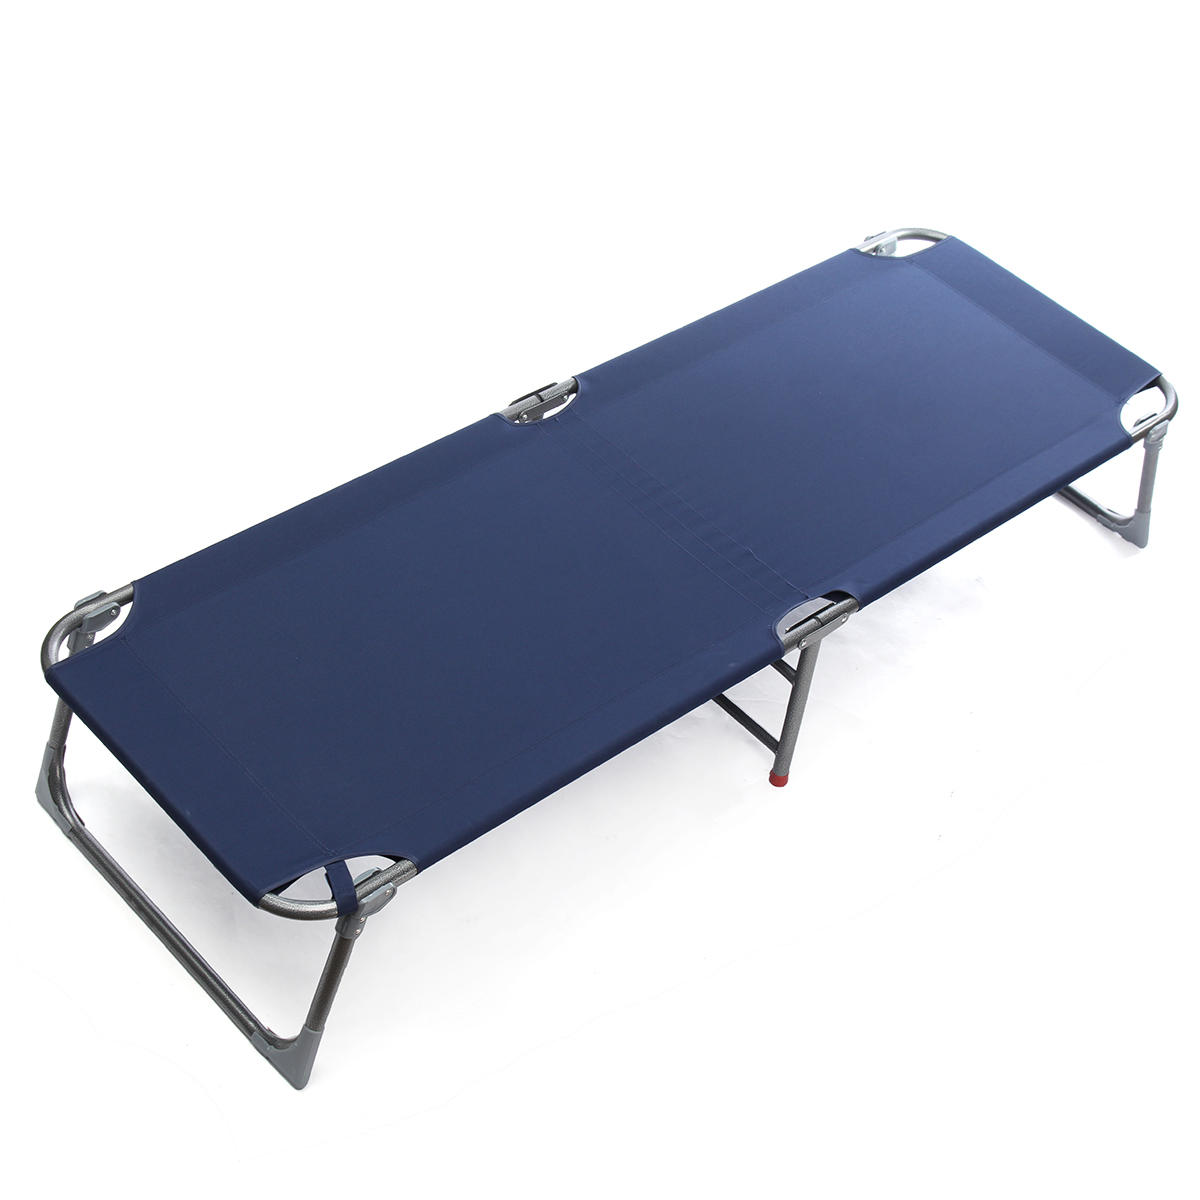 Cama plegable portátil para camping al aire libre, para descanso durante el día, silla reclinable